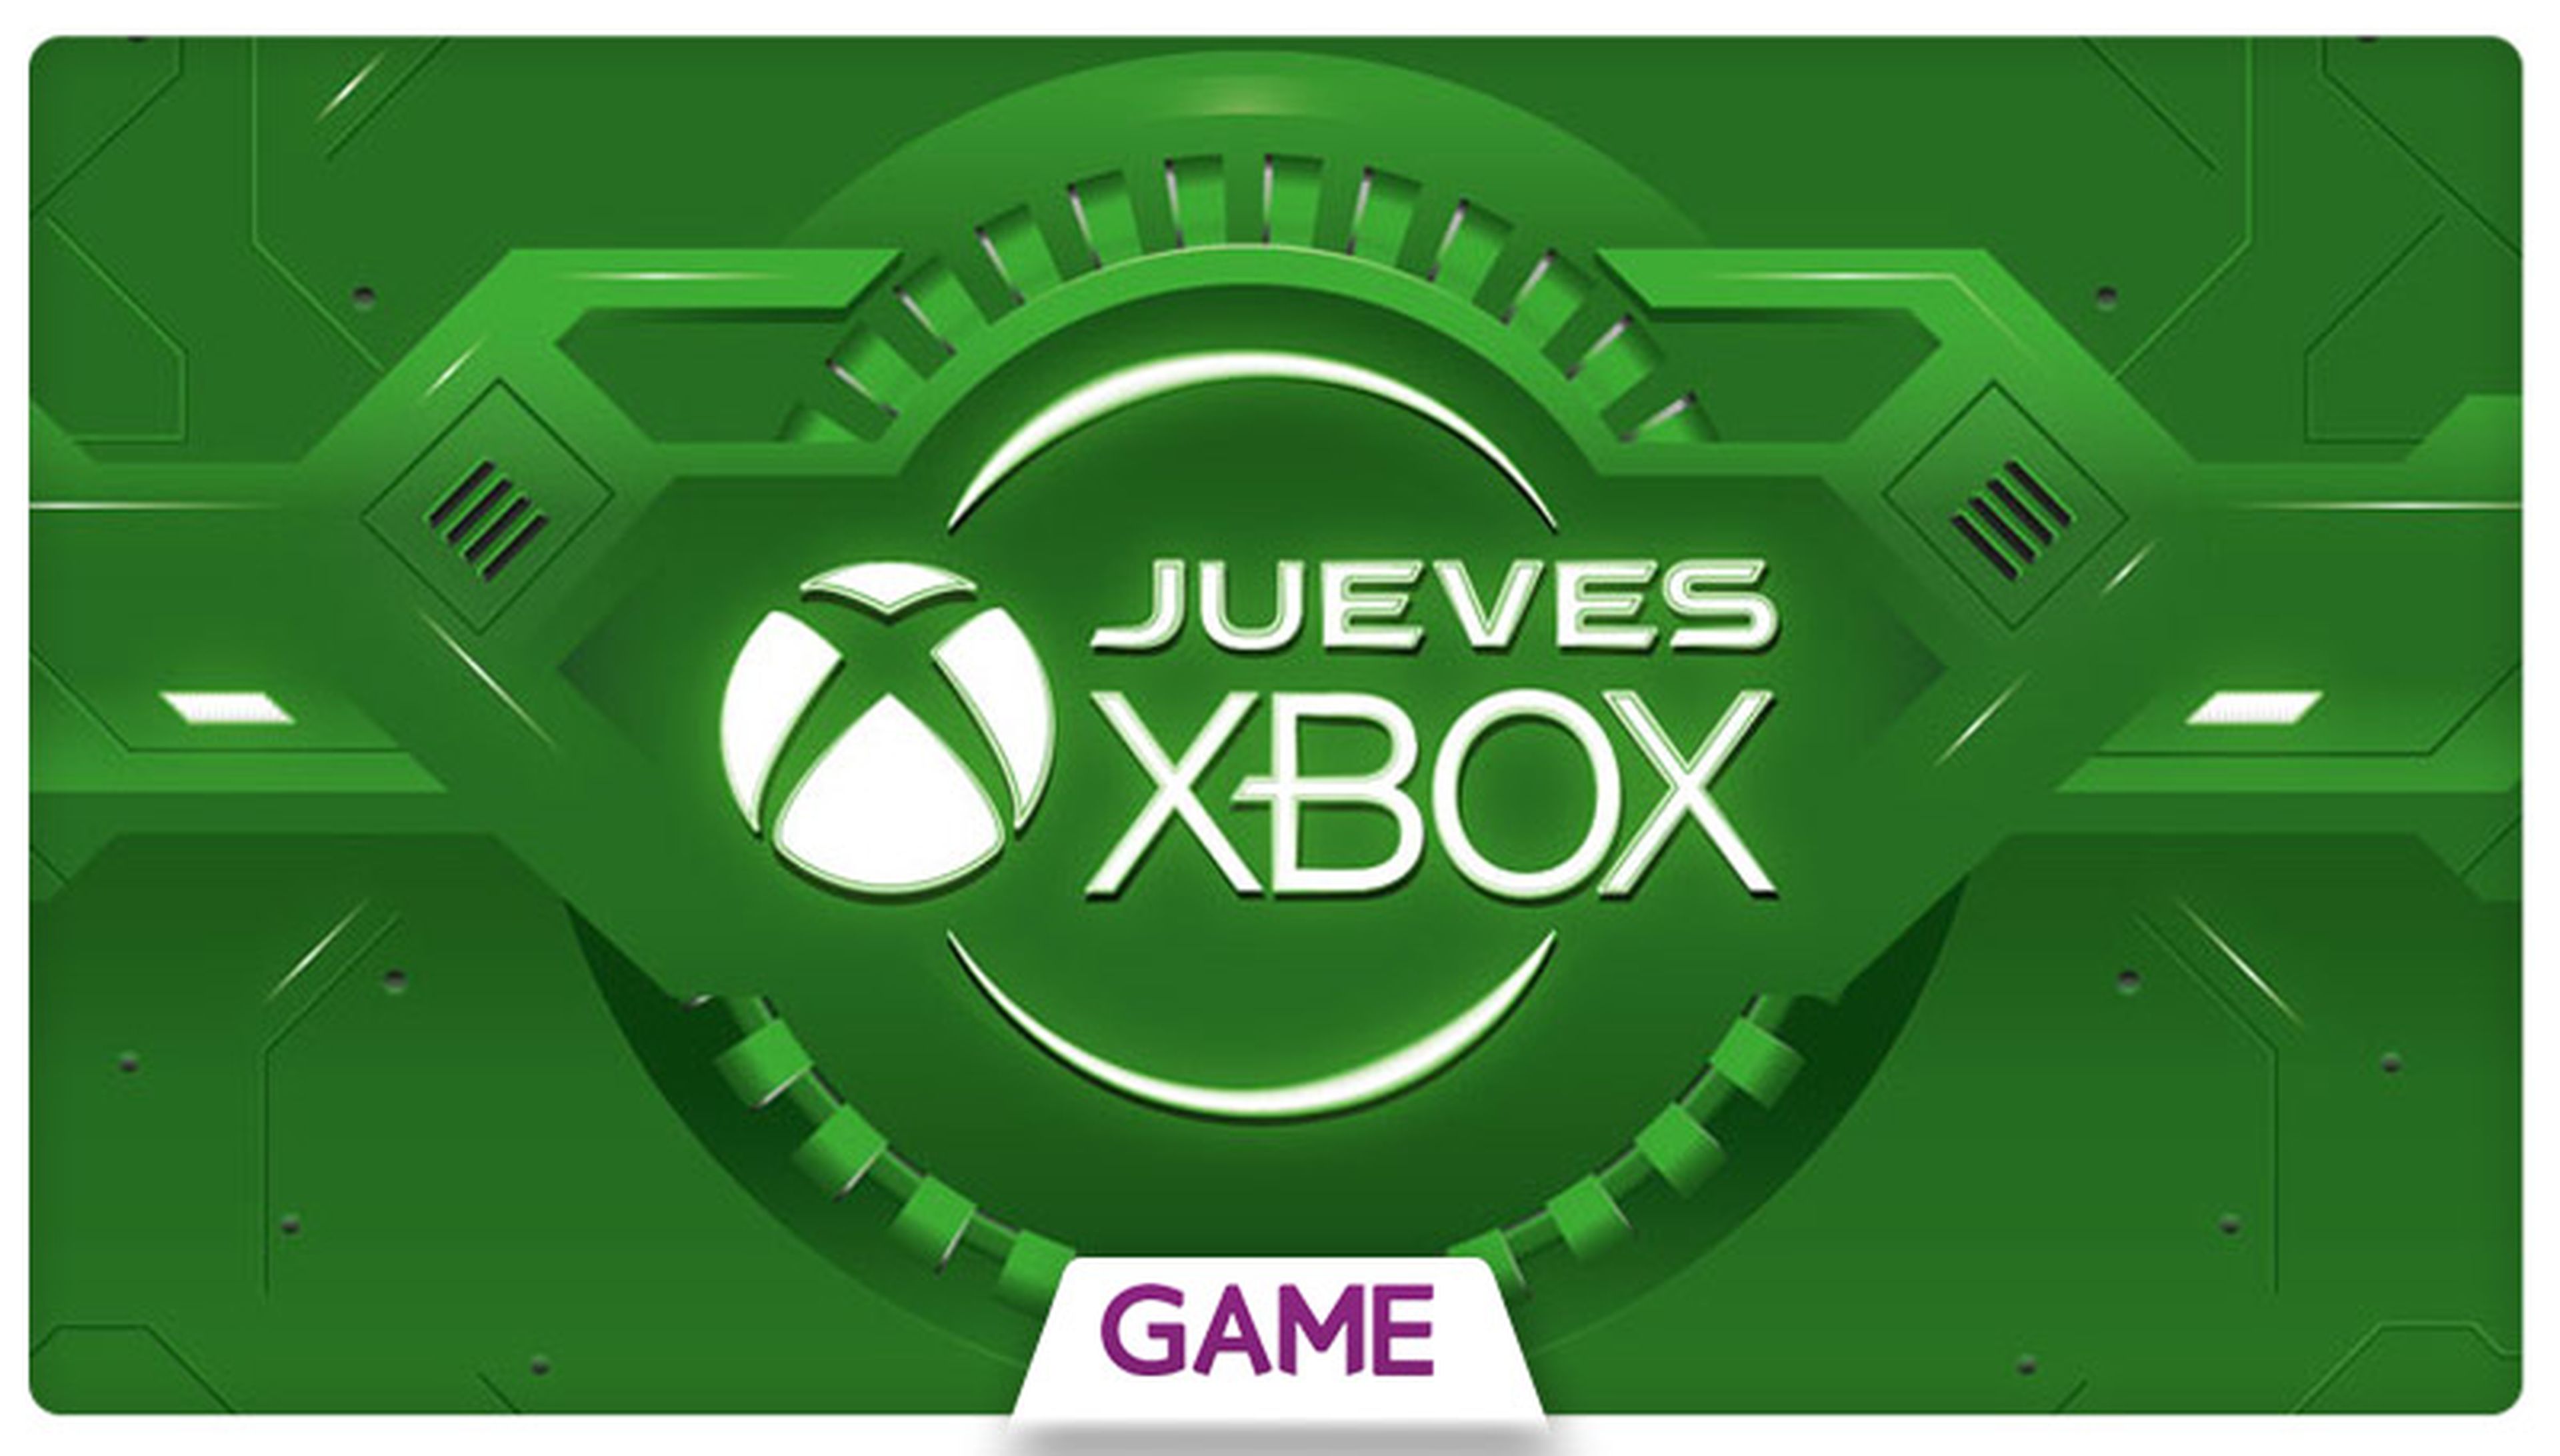 Jueves Xbox en GAME: Ofertas del 07/04/2016